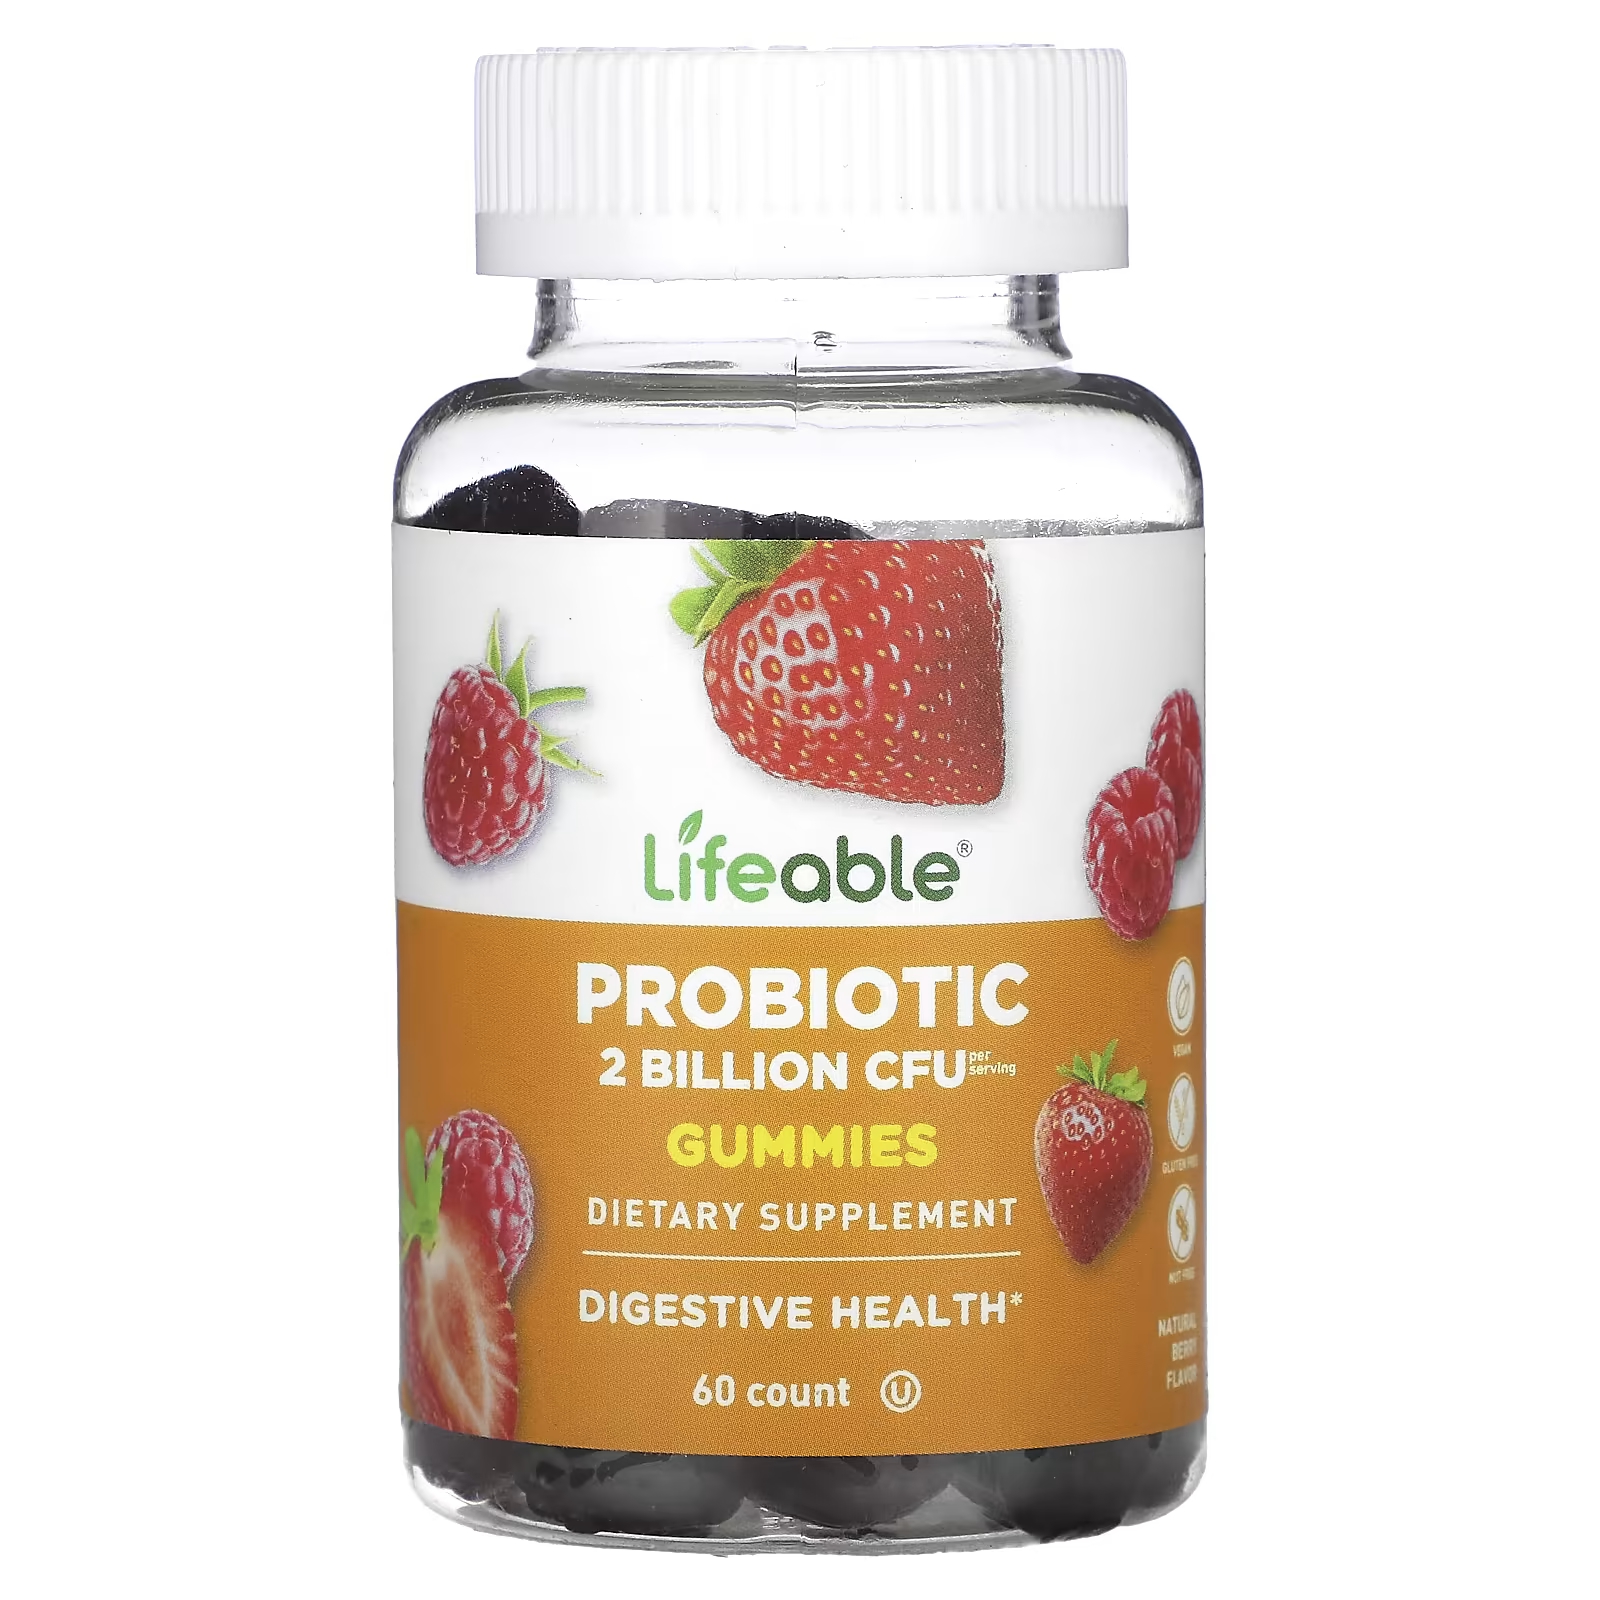 Пищевая добавка Lifeable с пробиотиками и натуральными ягодами, 60 жевательных конфет добавка с пробиотиками lifeable berry 60 жевательных конфет